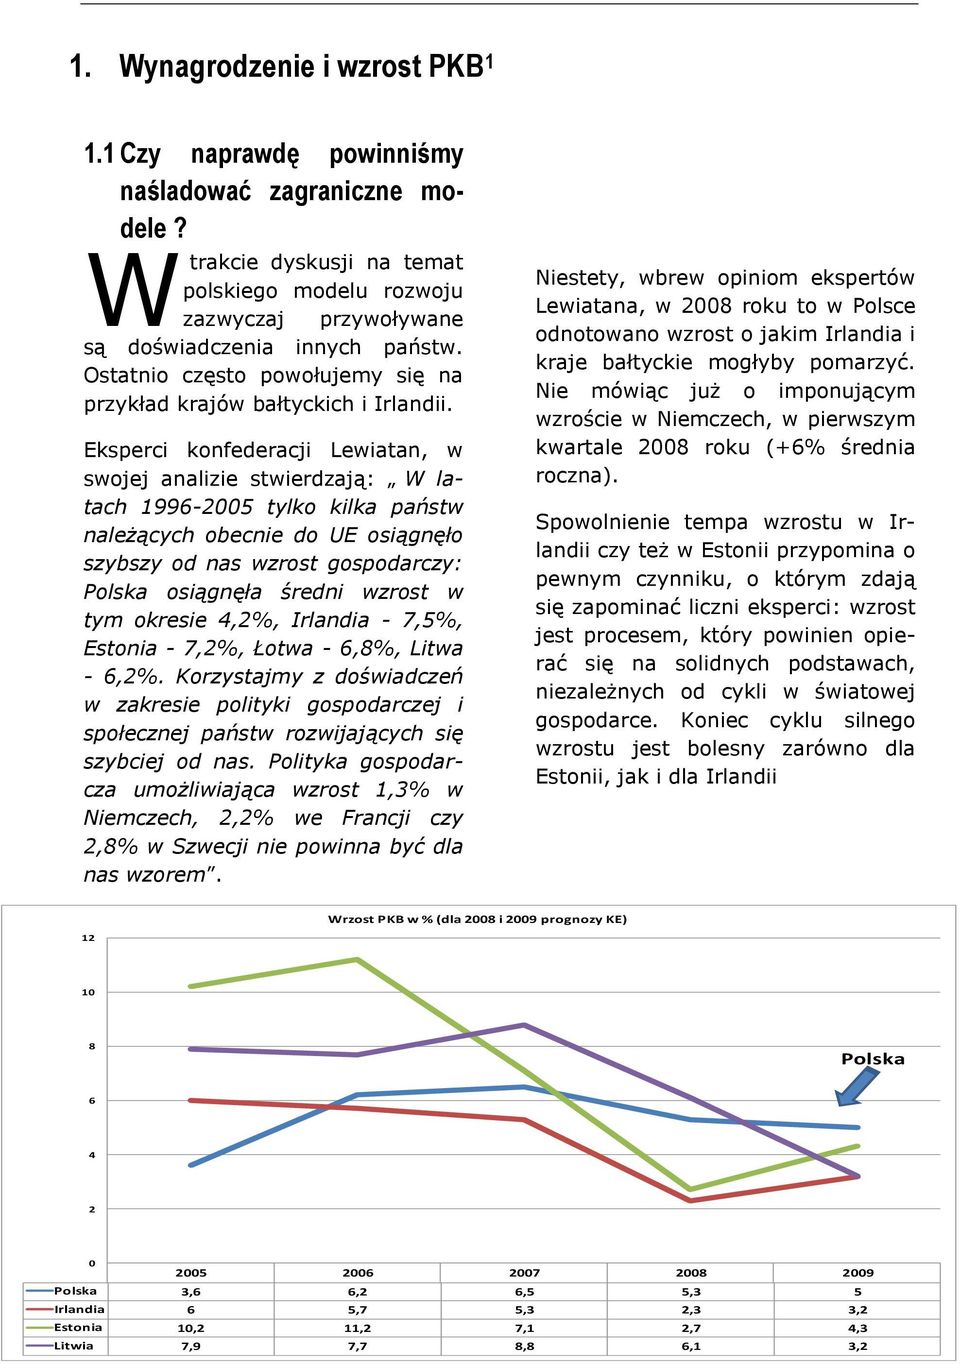 Eksperci konfederacji Lewiatan, w swojej analizie stwierdzają: W latach 1996-2005 tylko kilka państw należących obecnie do UE osiągnęło szybszy od nas wzrost gospodarczy: Polska osiągnęła średni